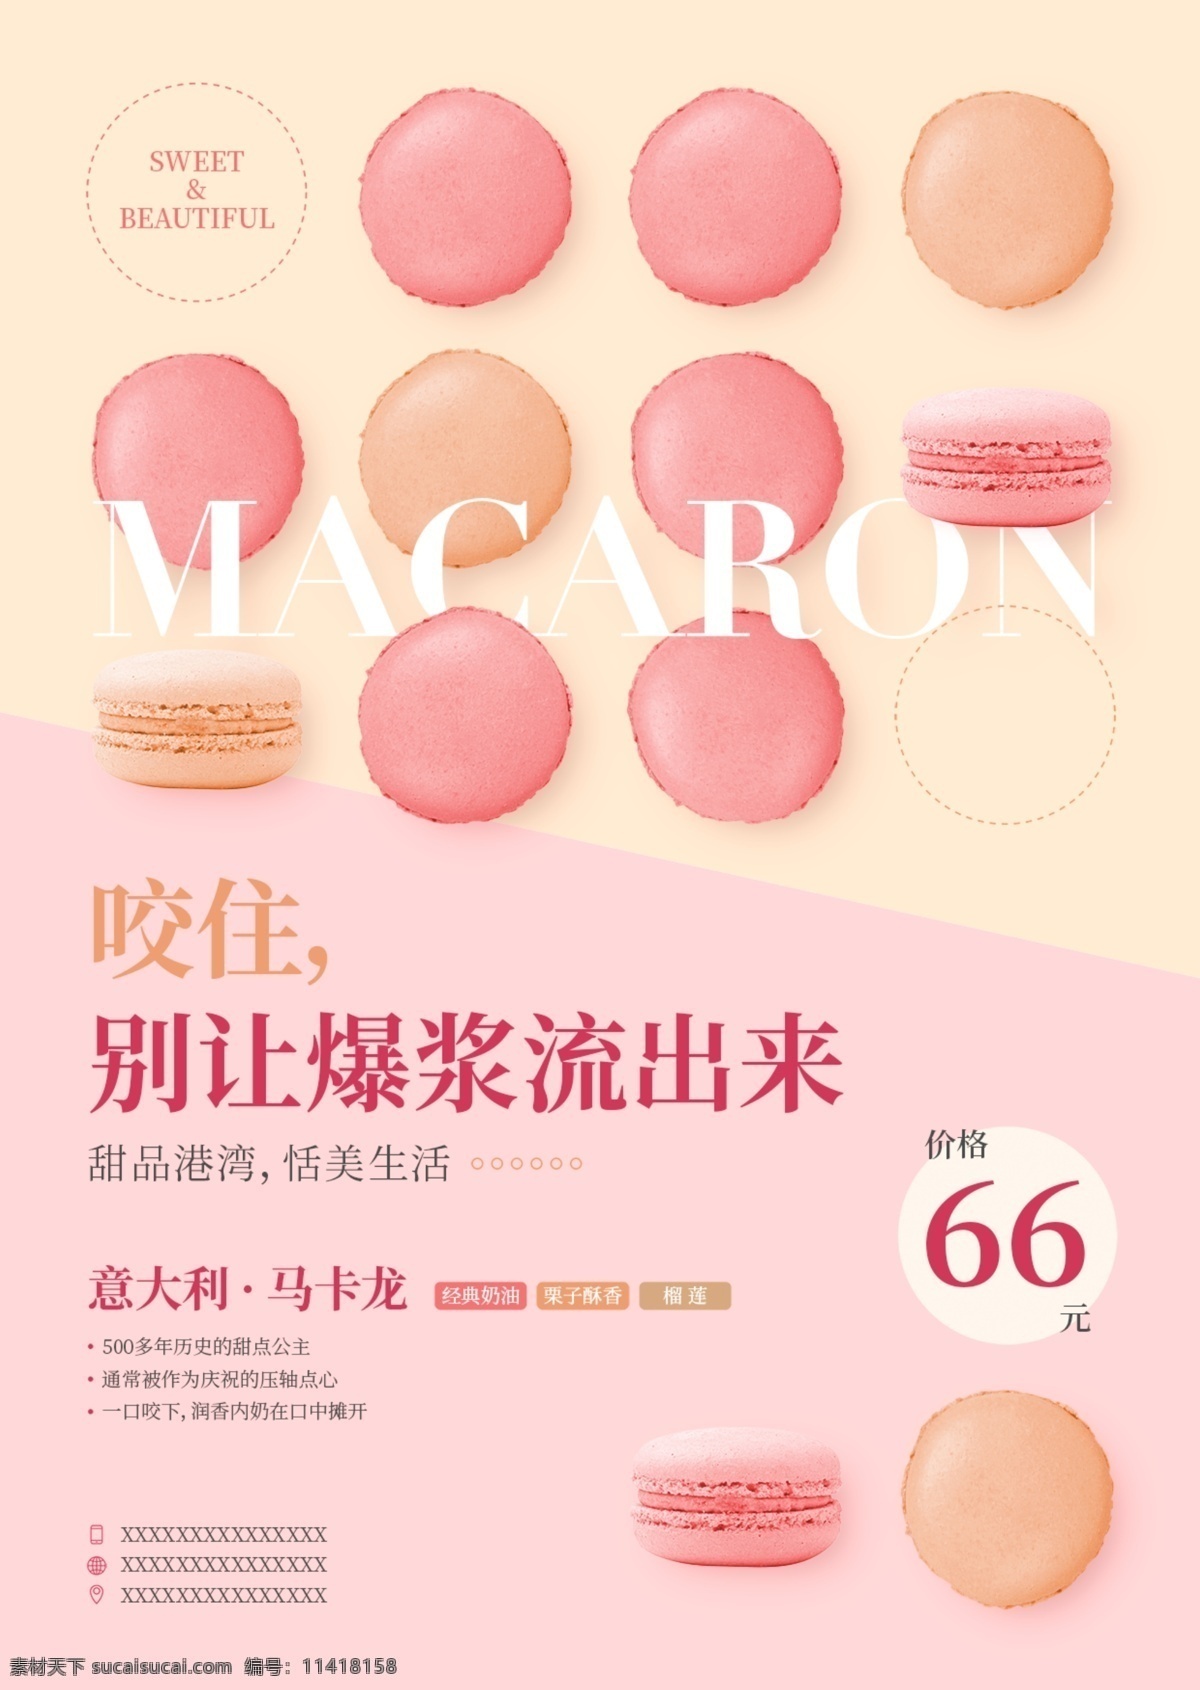 马卡龙 海报 甜品 食物海报 粉色 时尚 简约 分割 产品介绍 重复